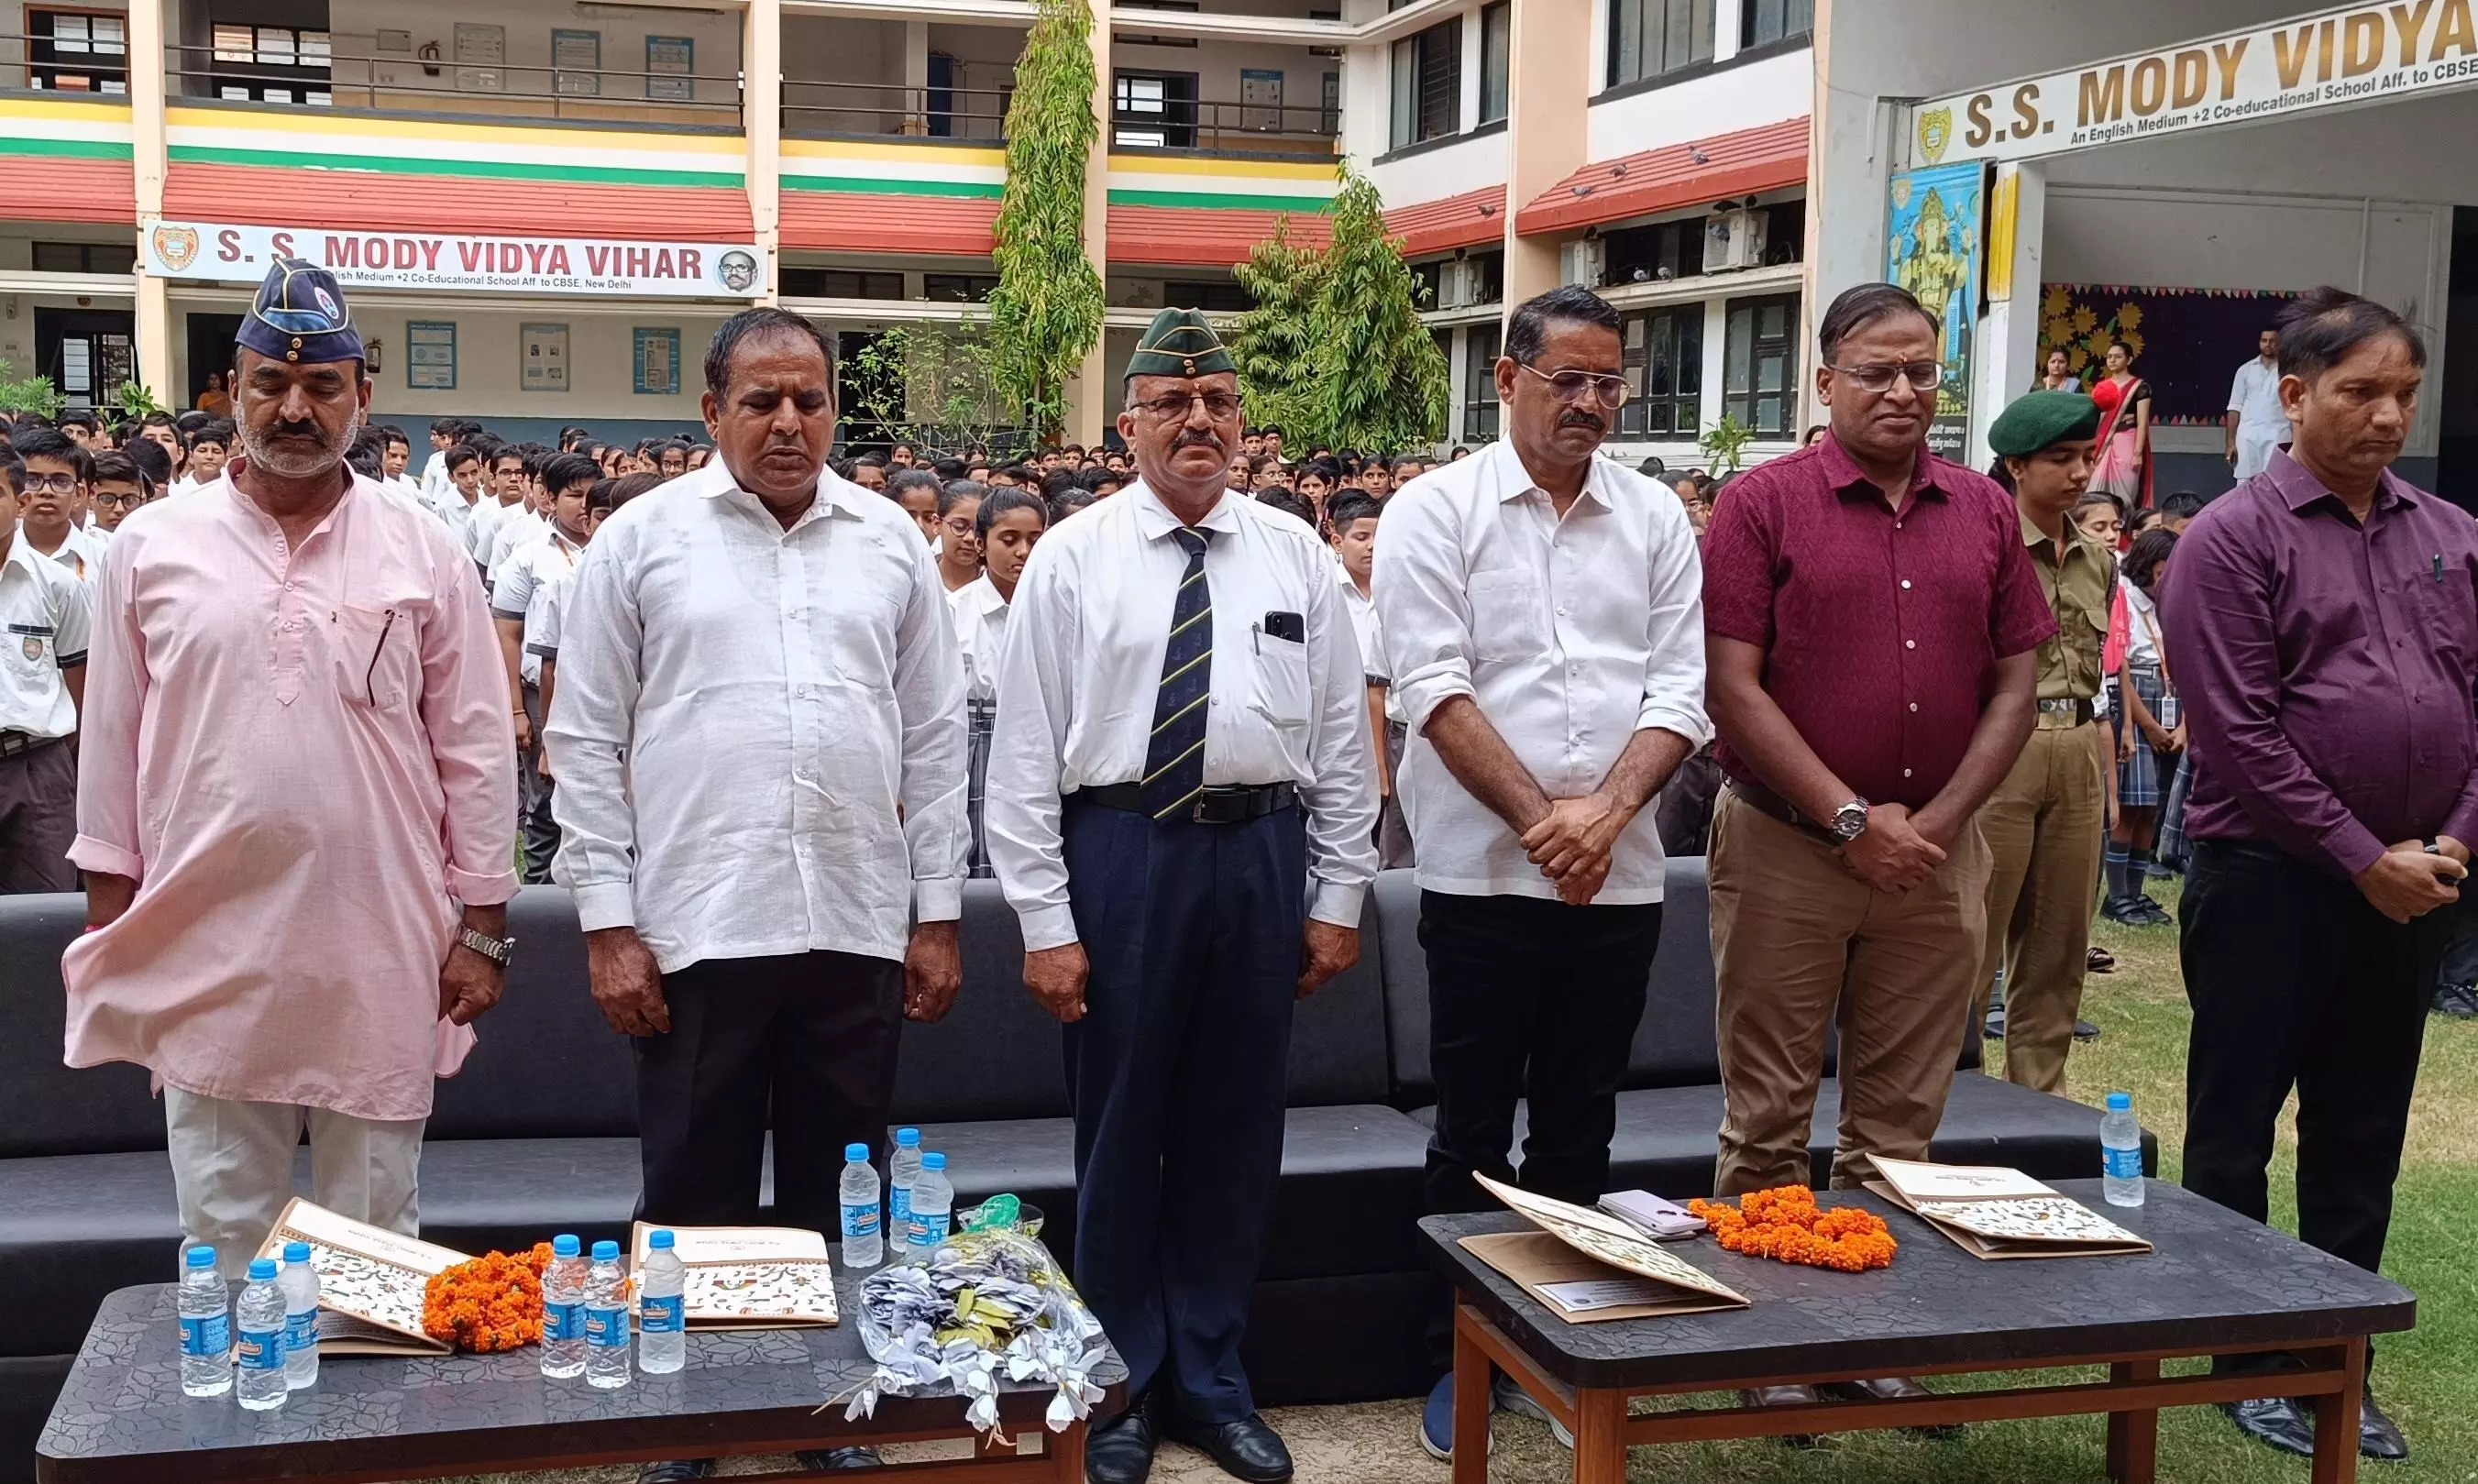 Jhunjhunu: एसएस मोदी विद्या विहार में कारगिल विजय दिवस की रजत जयंती मनाई गई